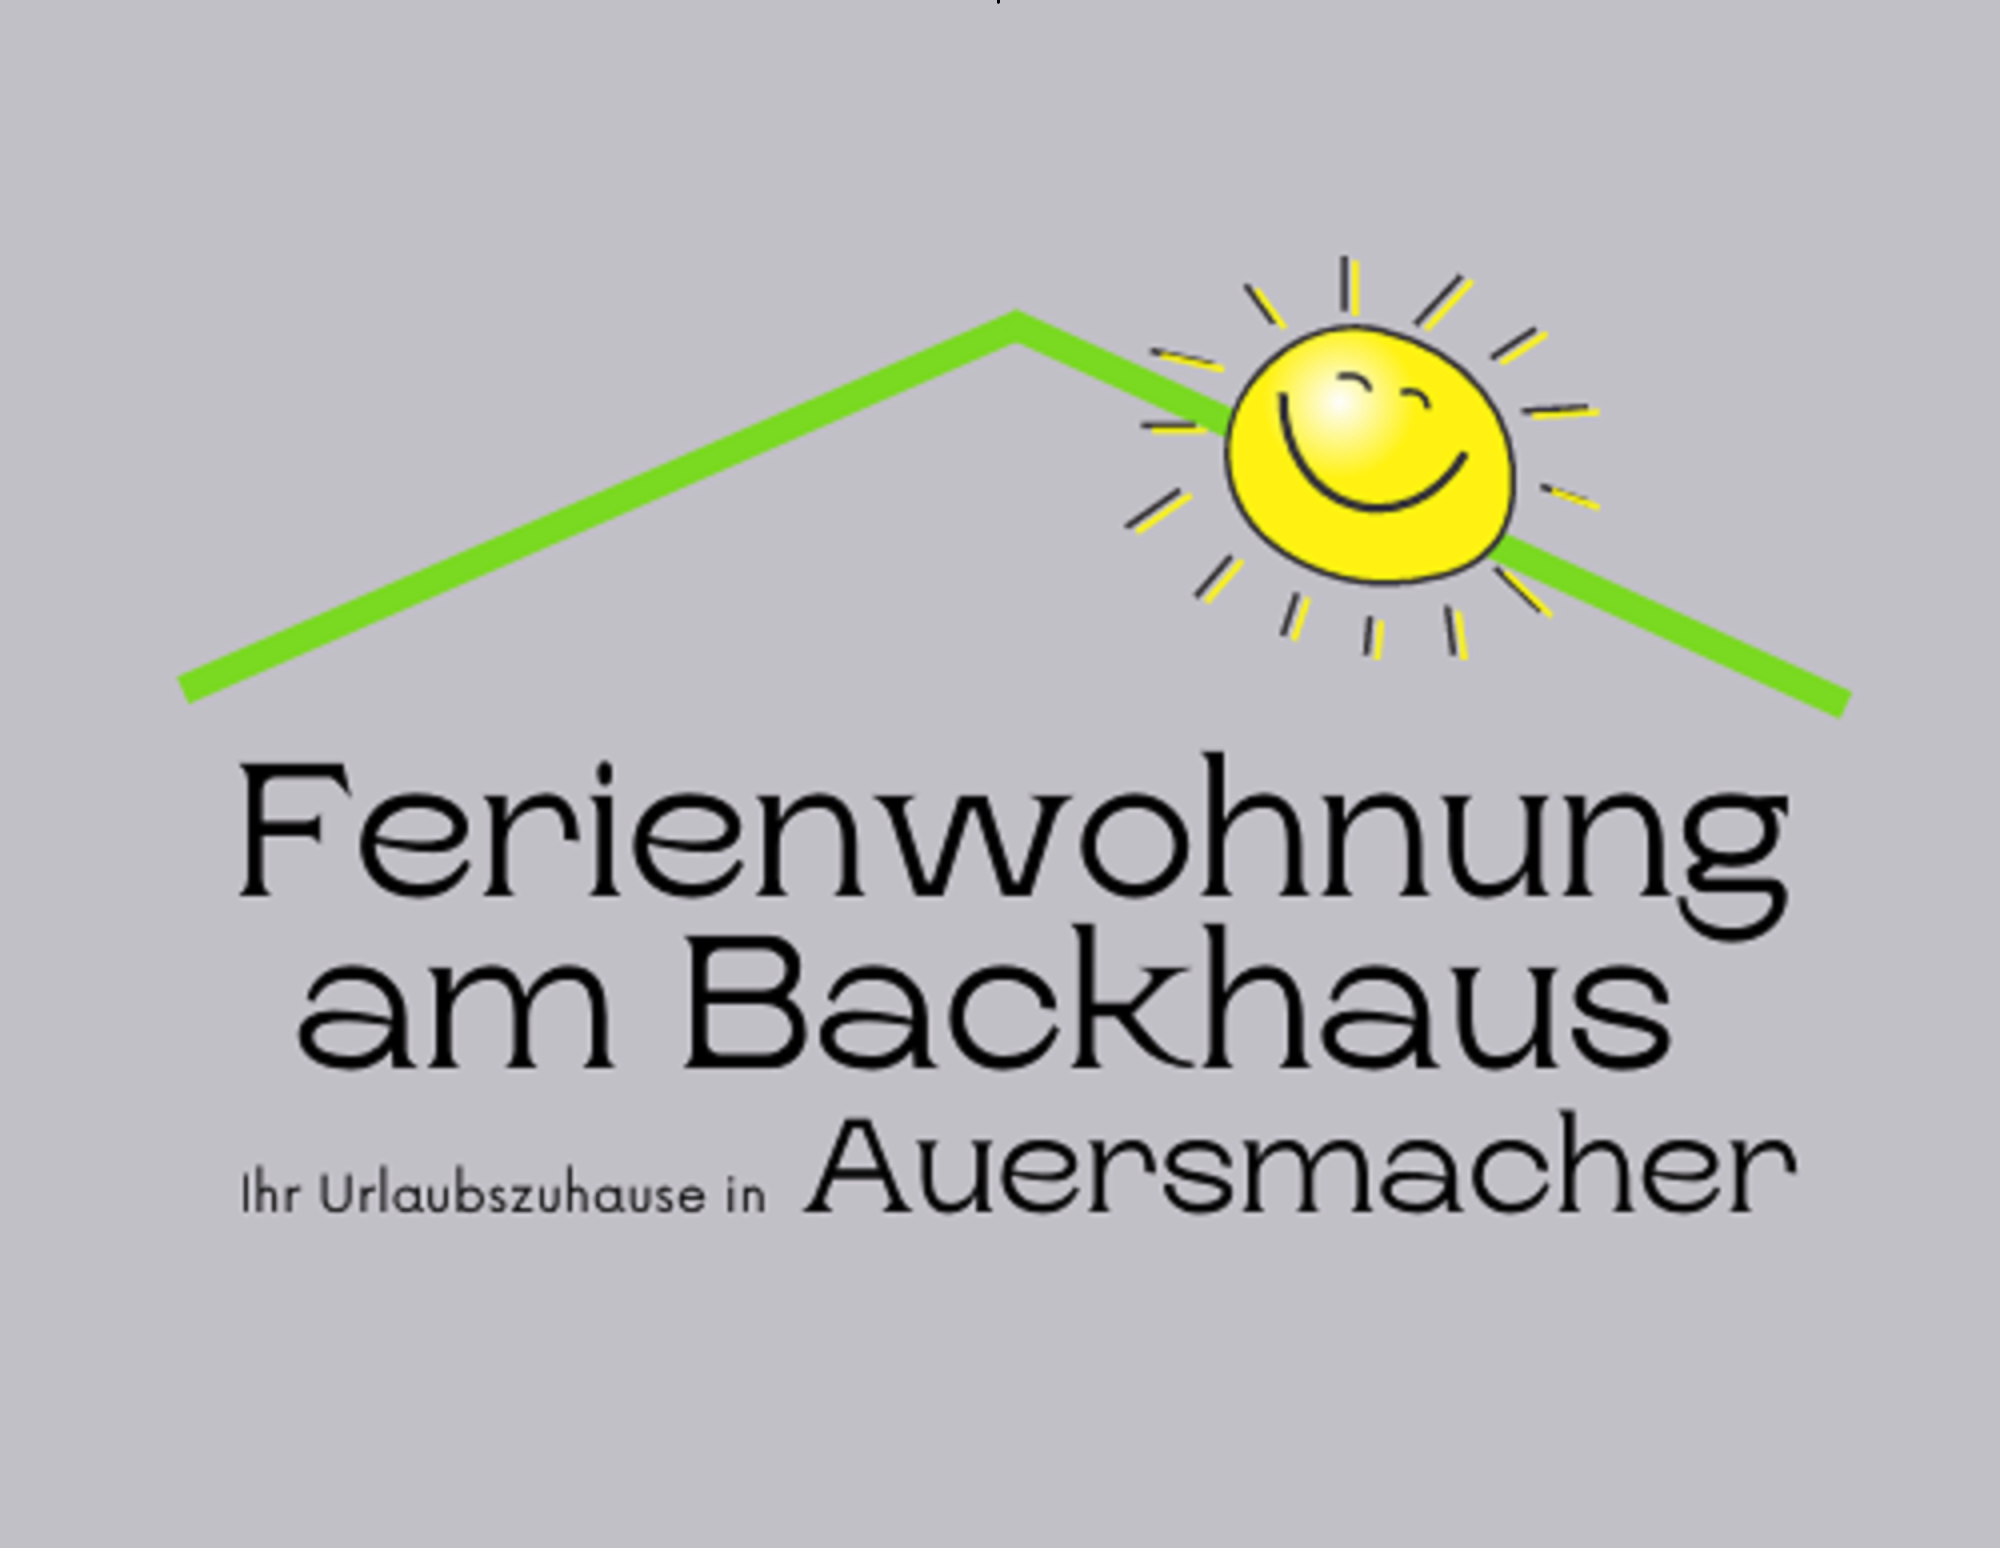 Flyer "Ferienwohnung am Backhaus". Dieser Schriftzug steht unter einem grünen Dach mit einer grinsenden, gelben Sonne